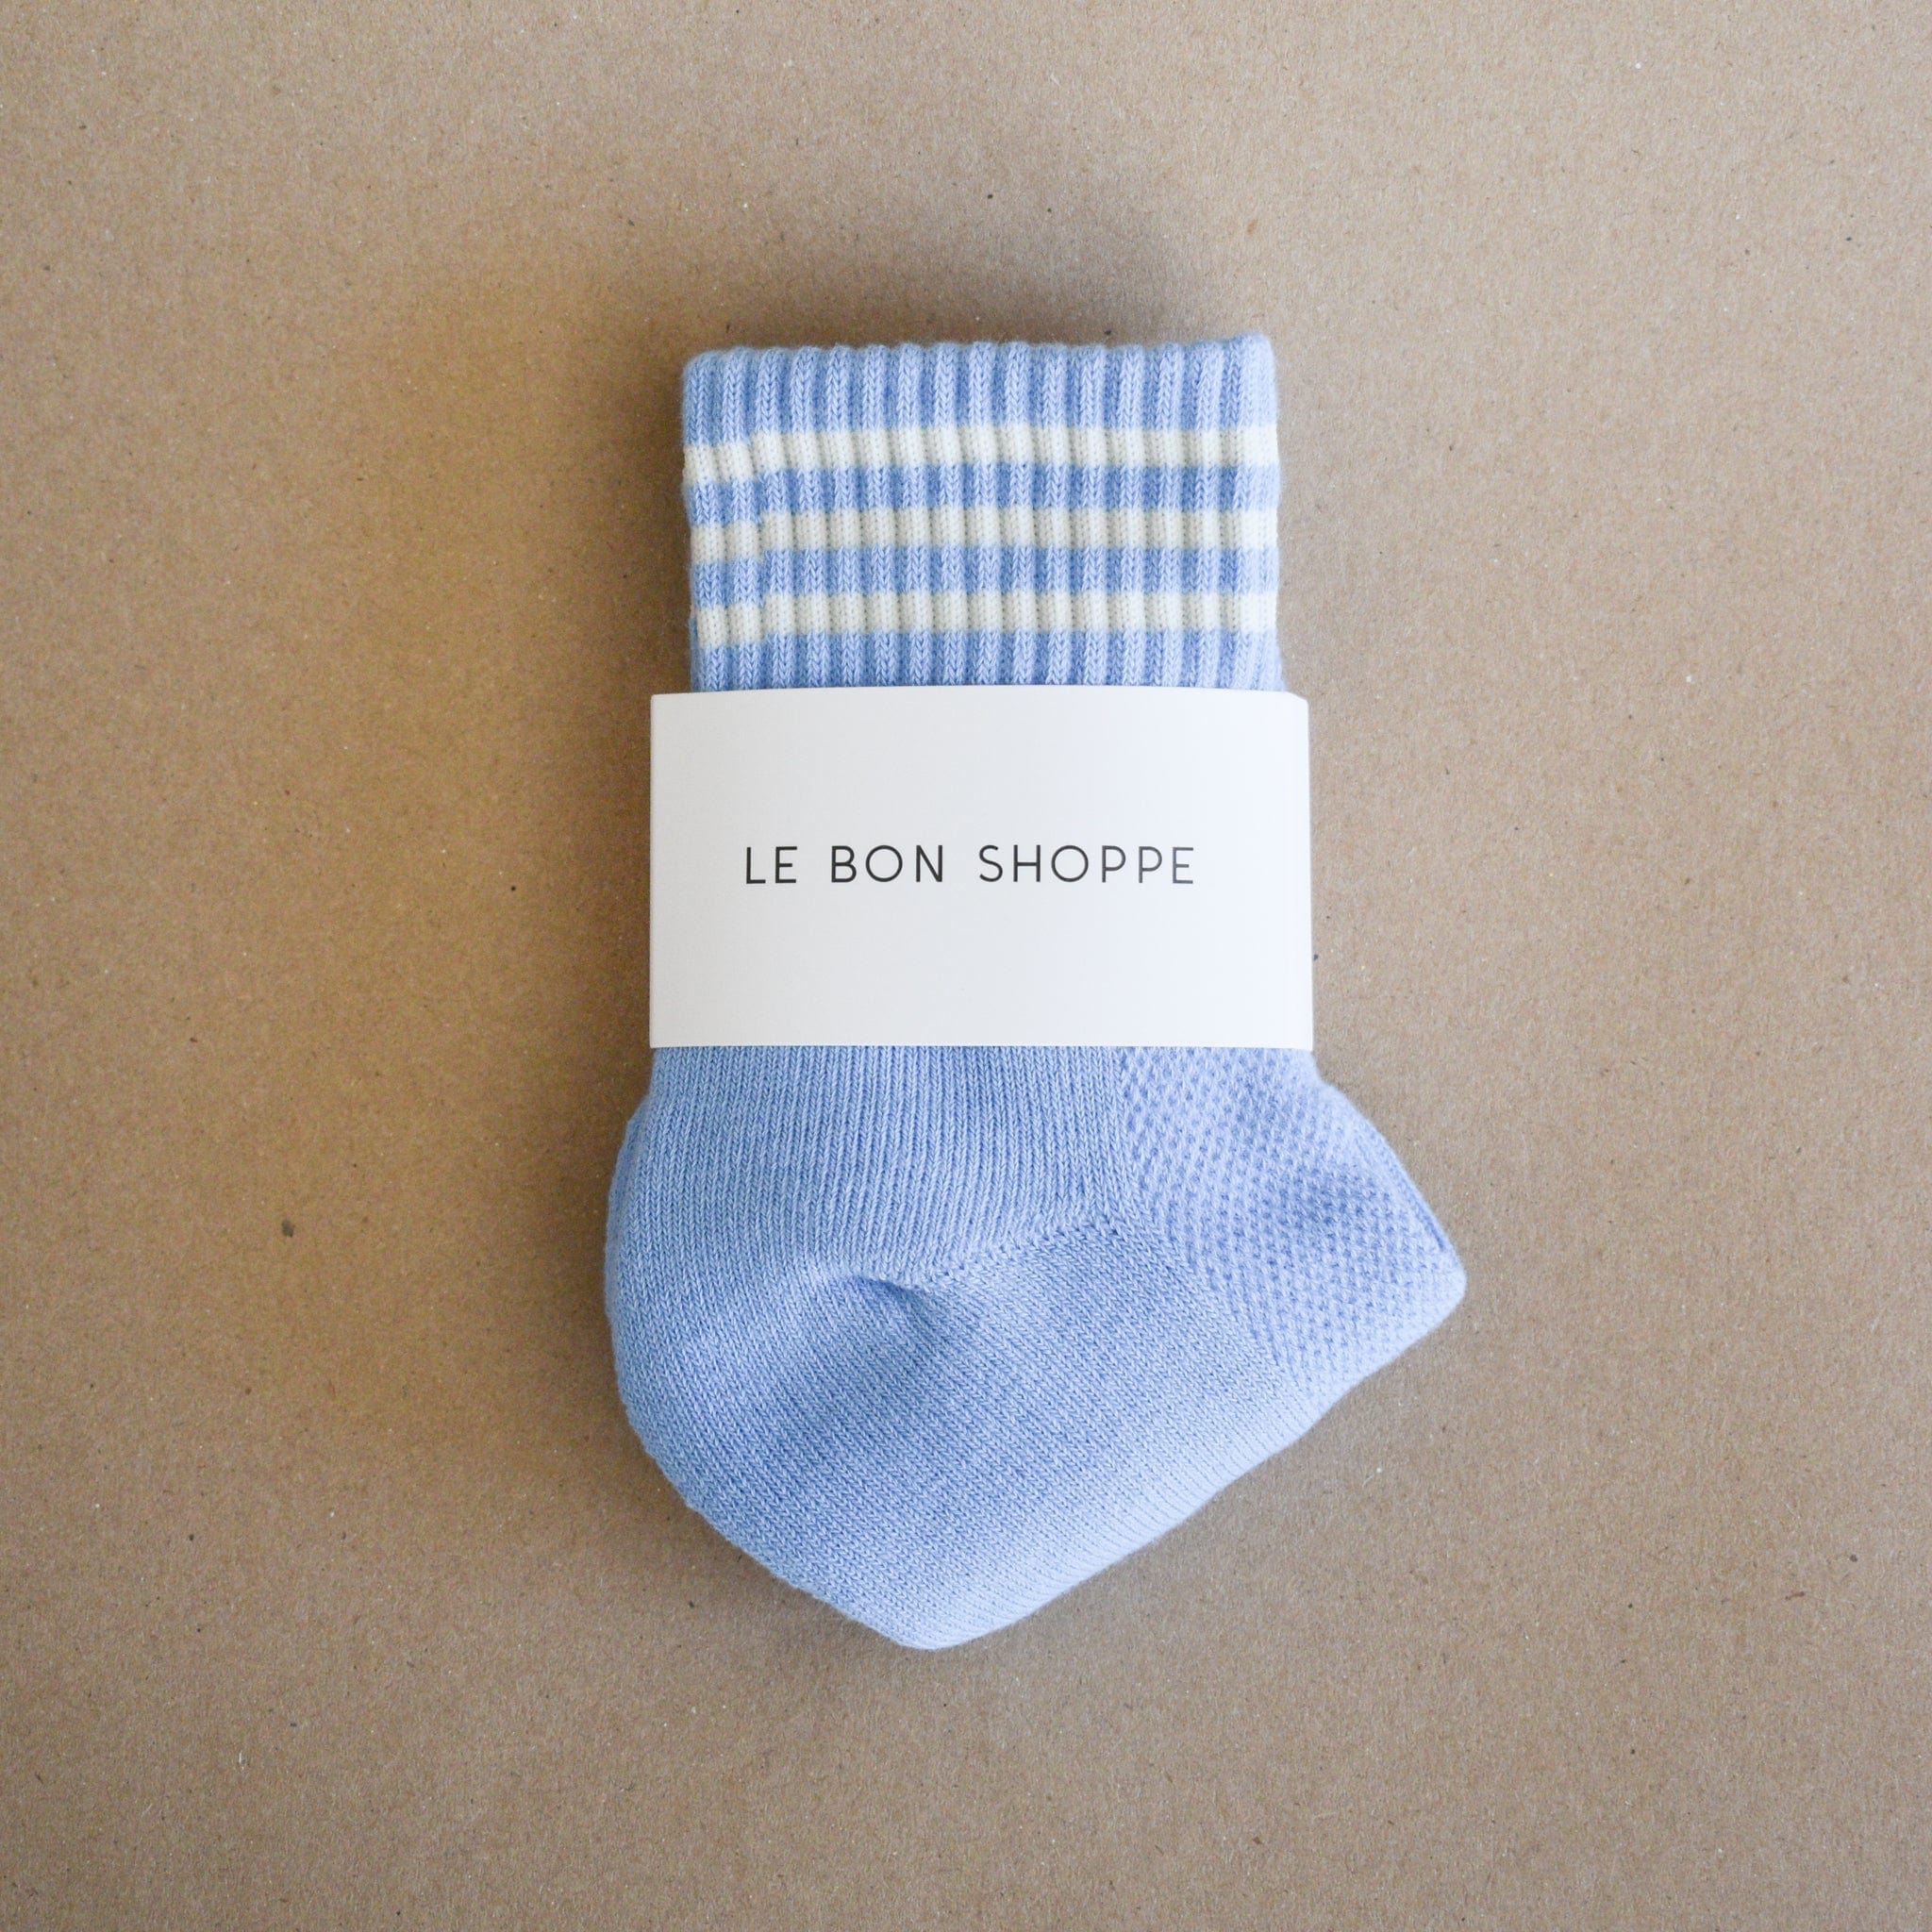 Le Bon Shoppe socks Parisian Blue Le Bon "Girlfriend" Socks